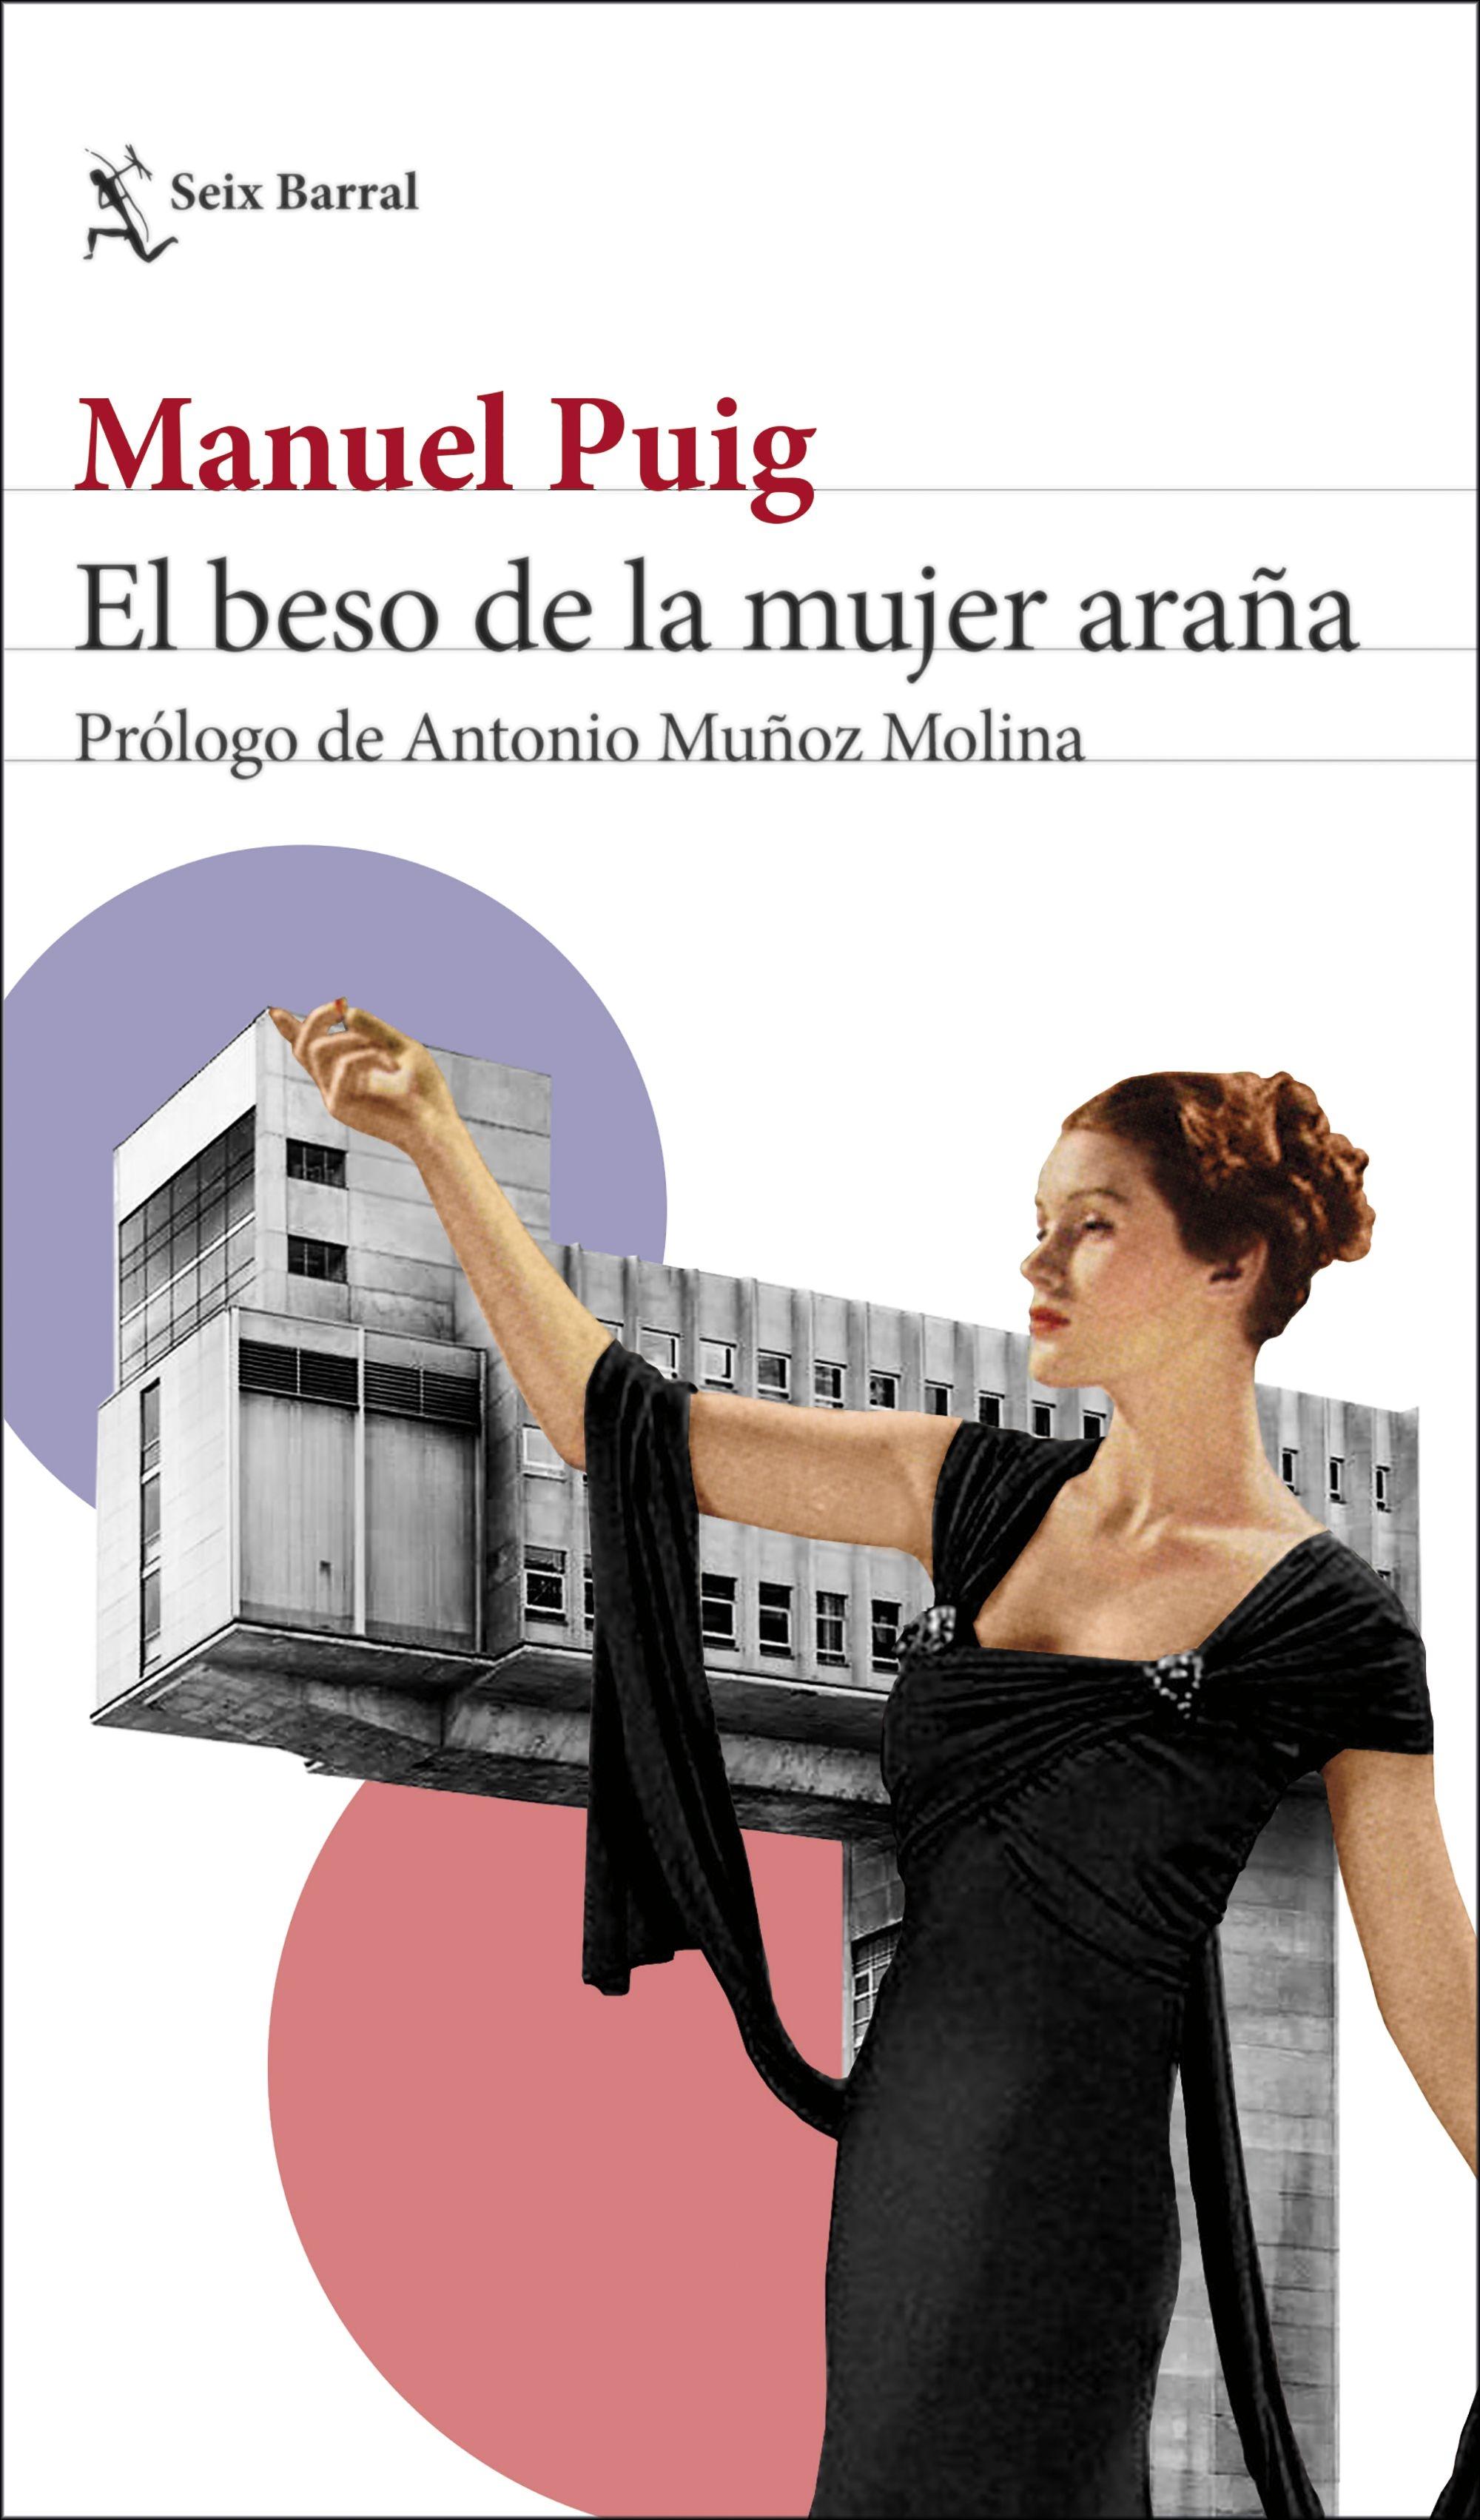 Beso de la mujer araña, El "Prólogo de Antonio Muñoz Molina"